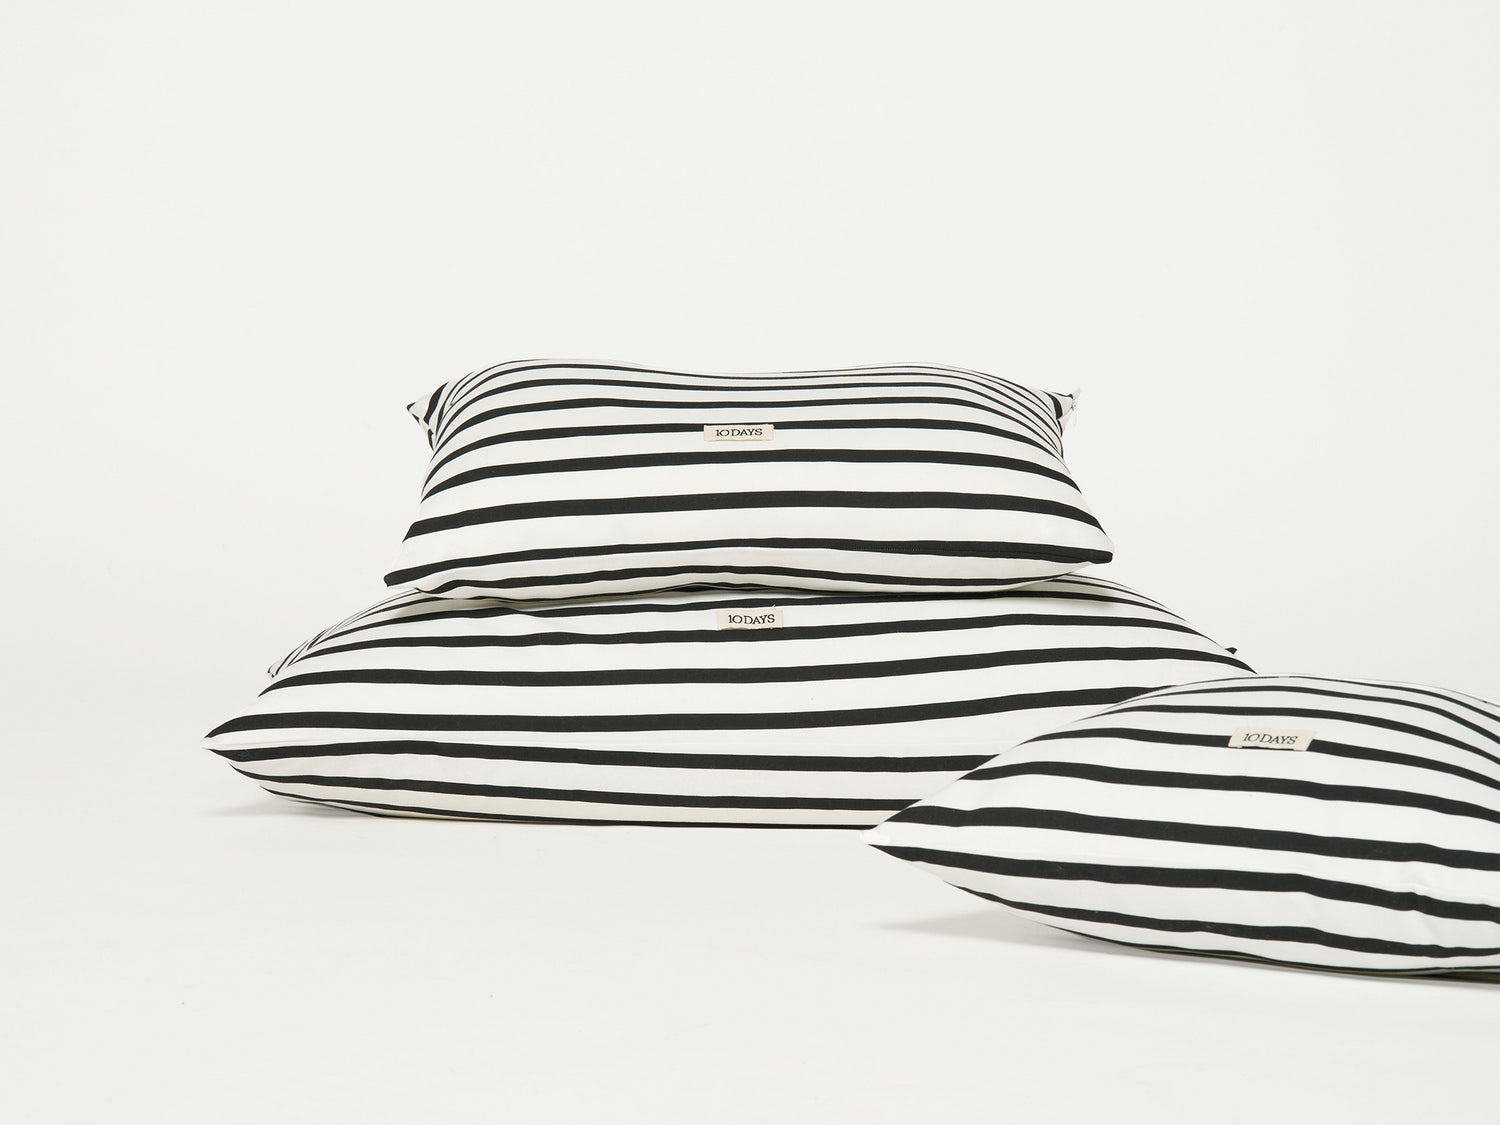 pillow stripes 40x60 | ecru/black